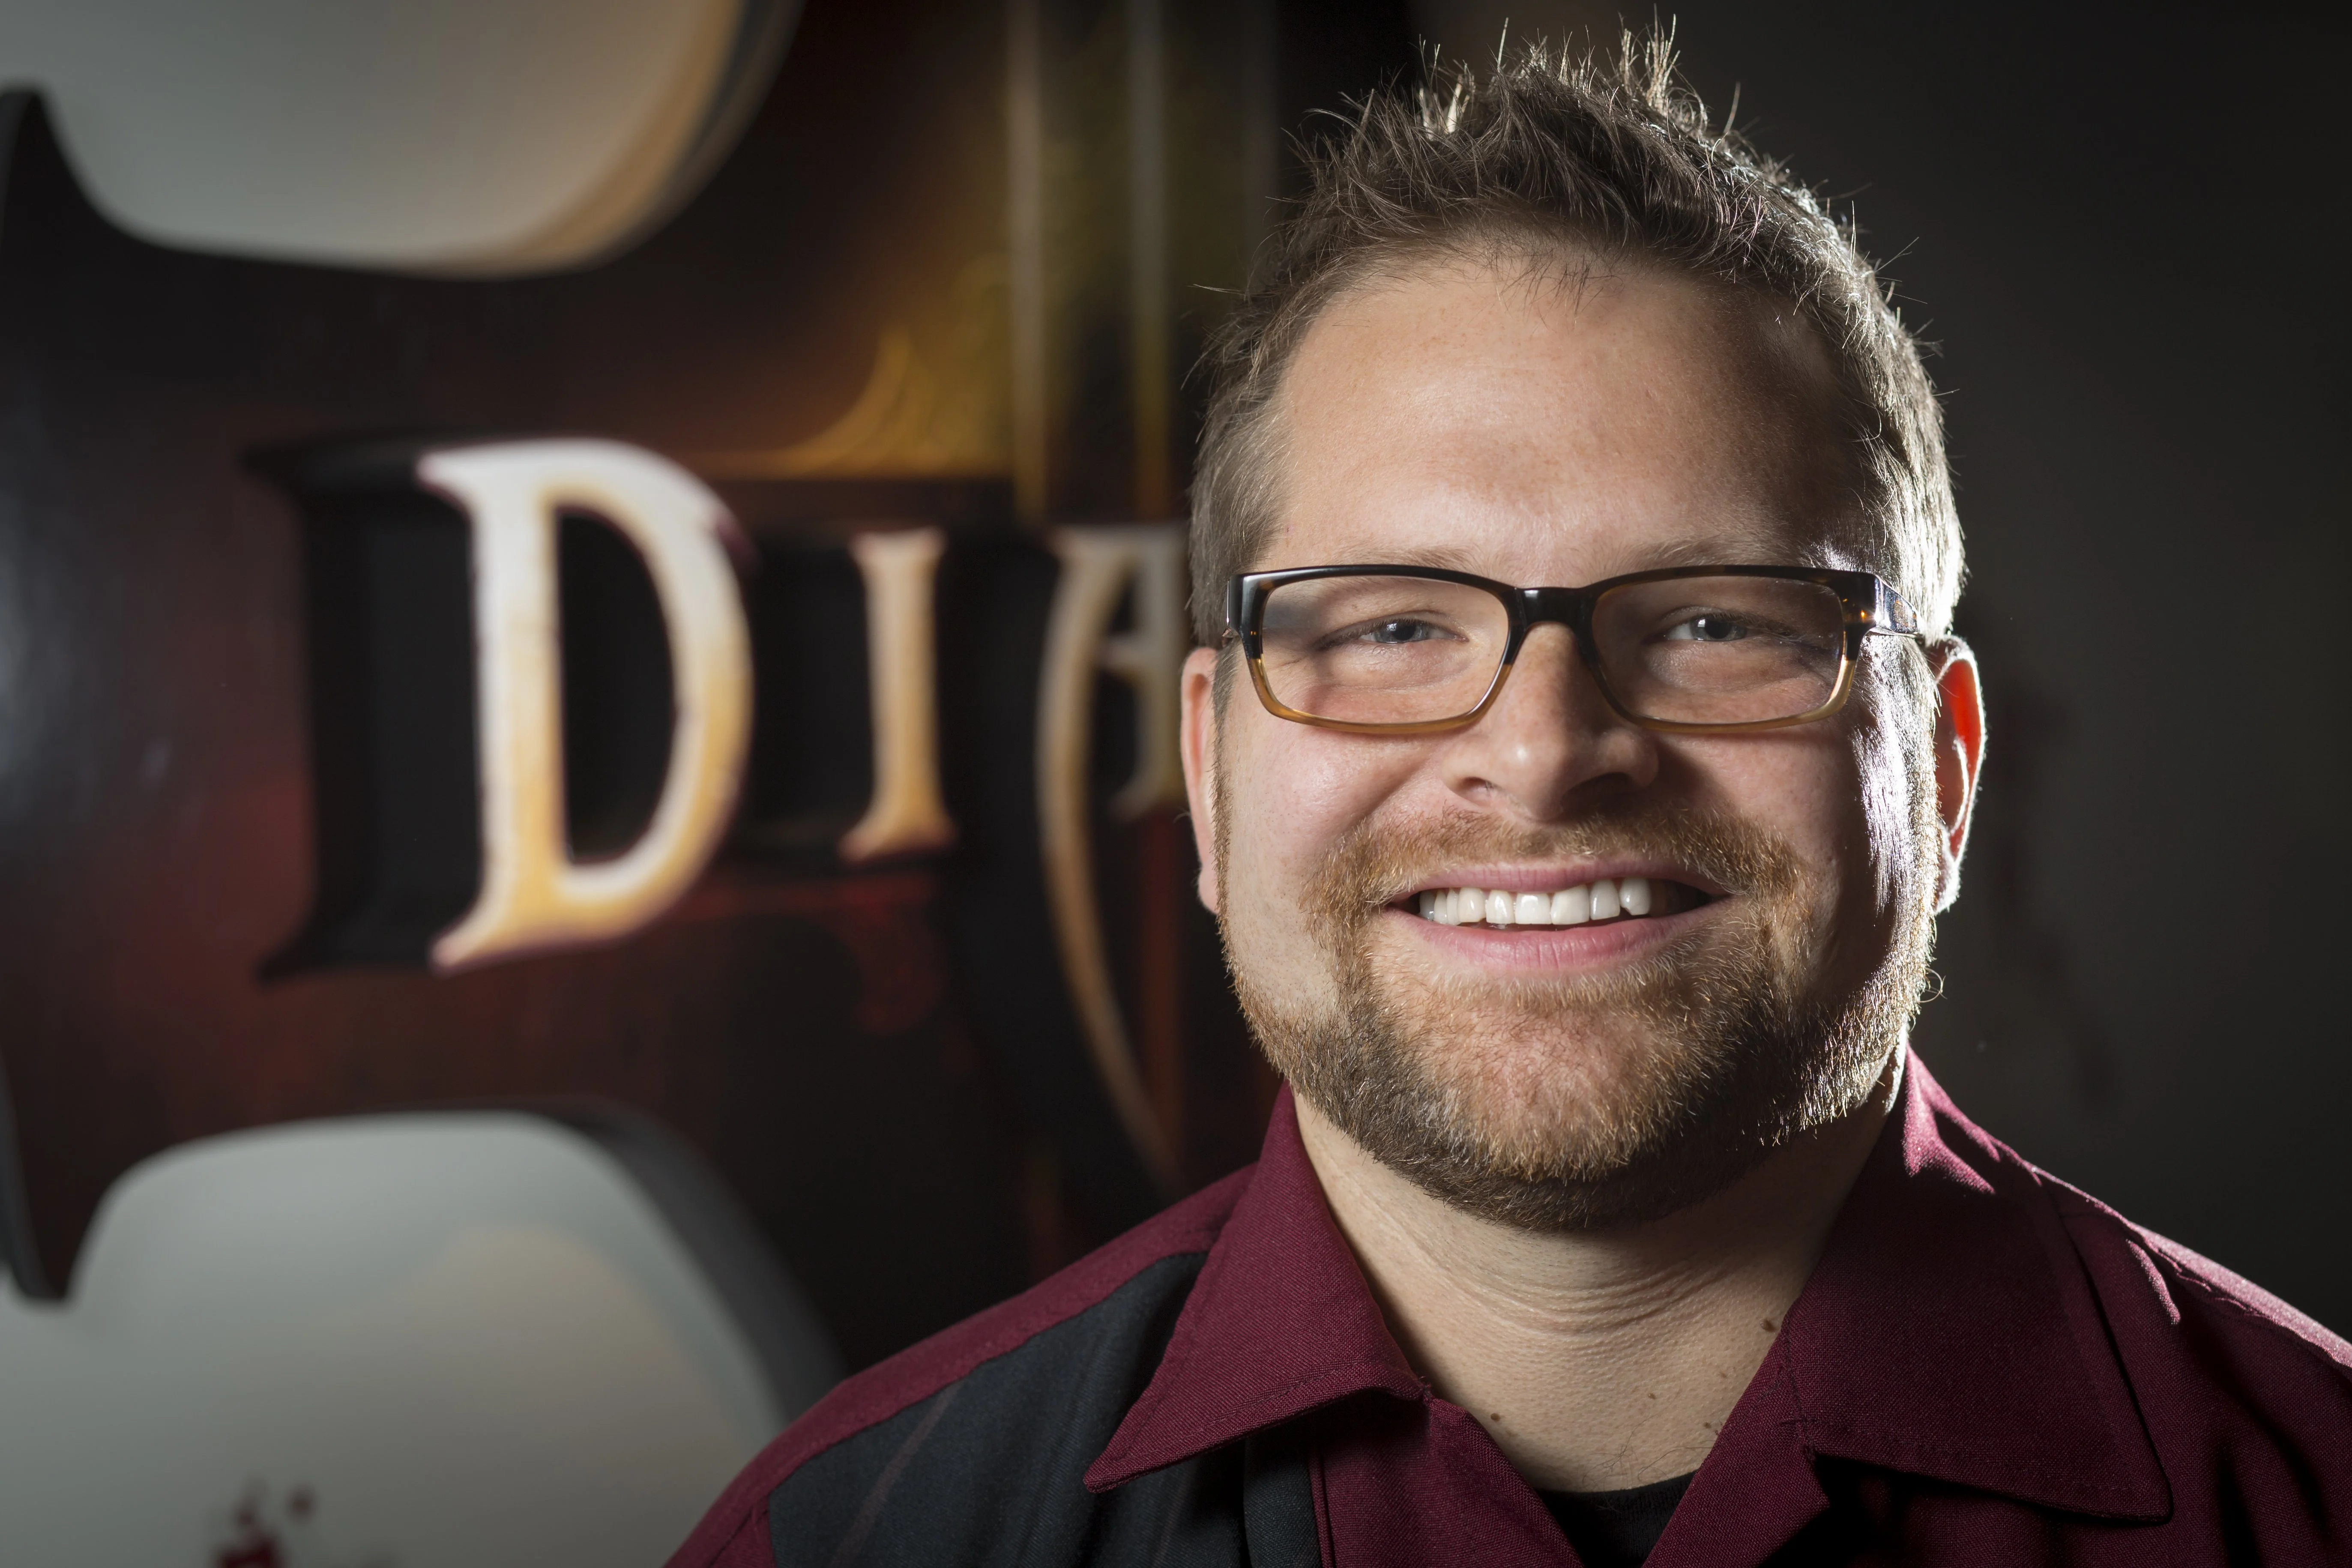 Джош Москиера, главный дизайнер Diablo 3 для консолей